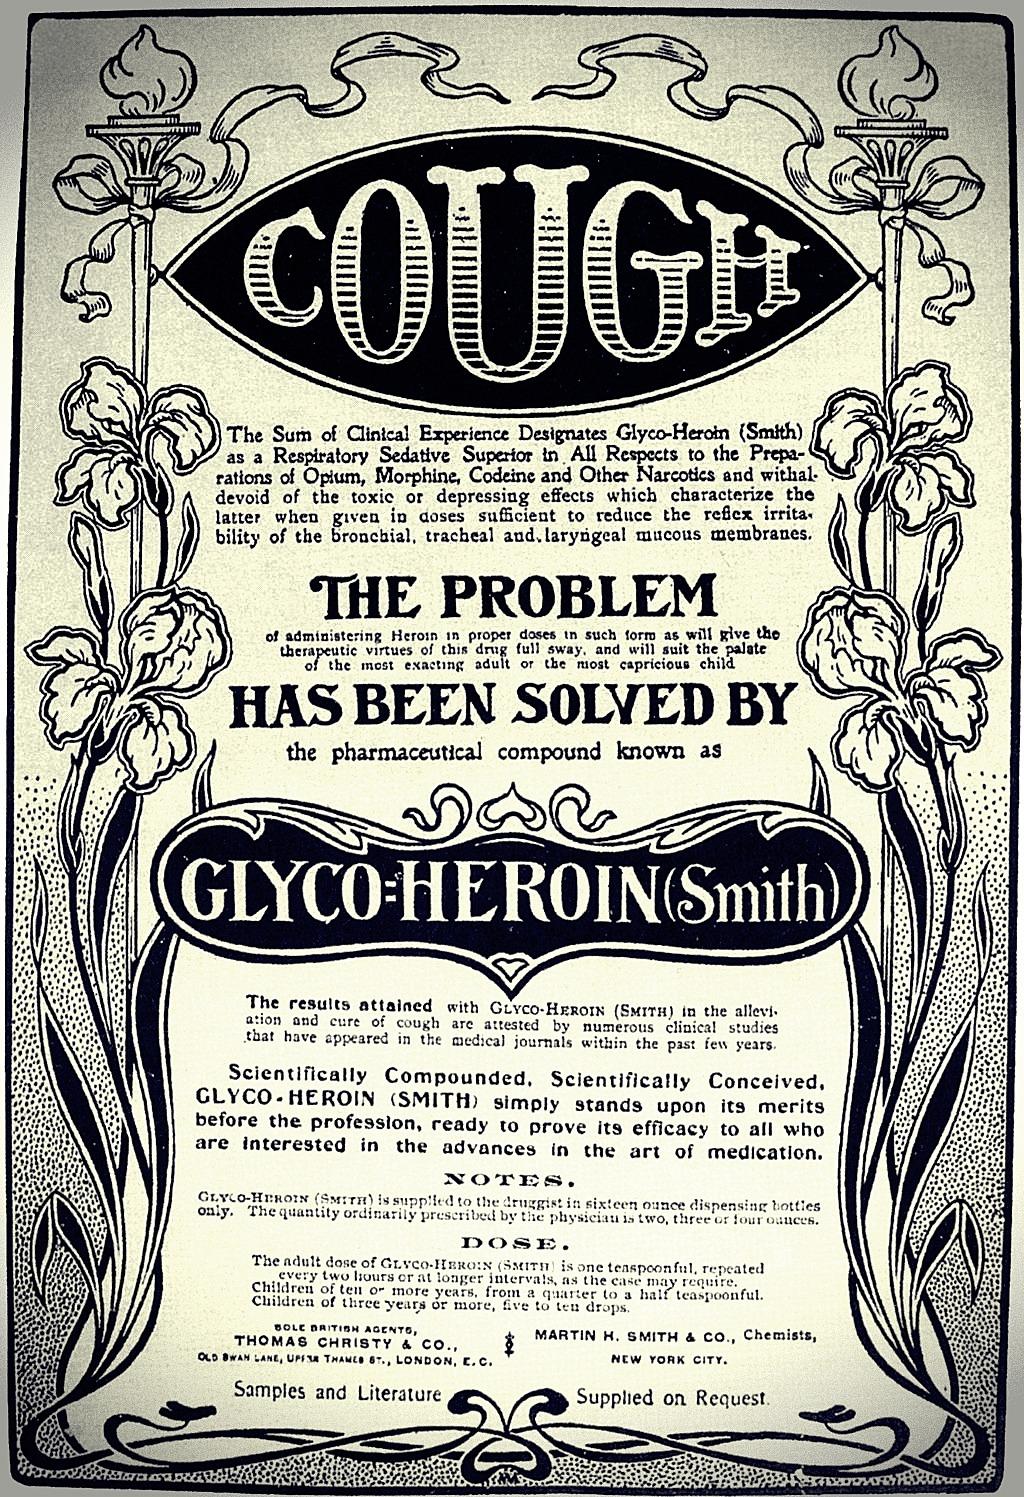 Ved hoste anbefaler heroin-annoncen fra Smith en dosis  på en teskefuld hver anden time - og det halve til børn.